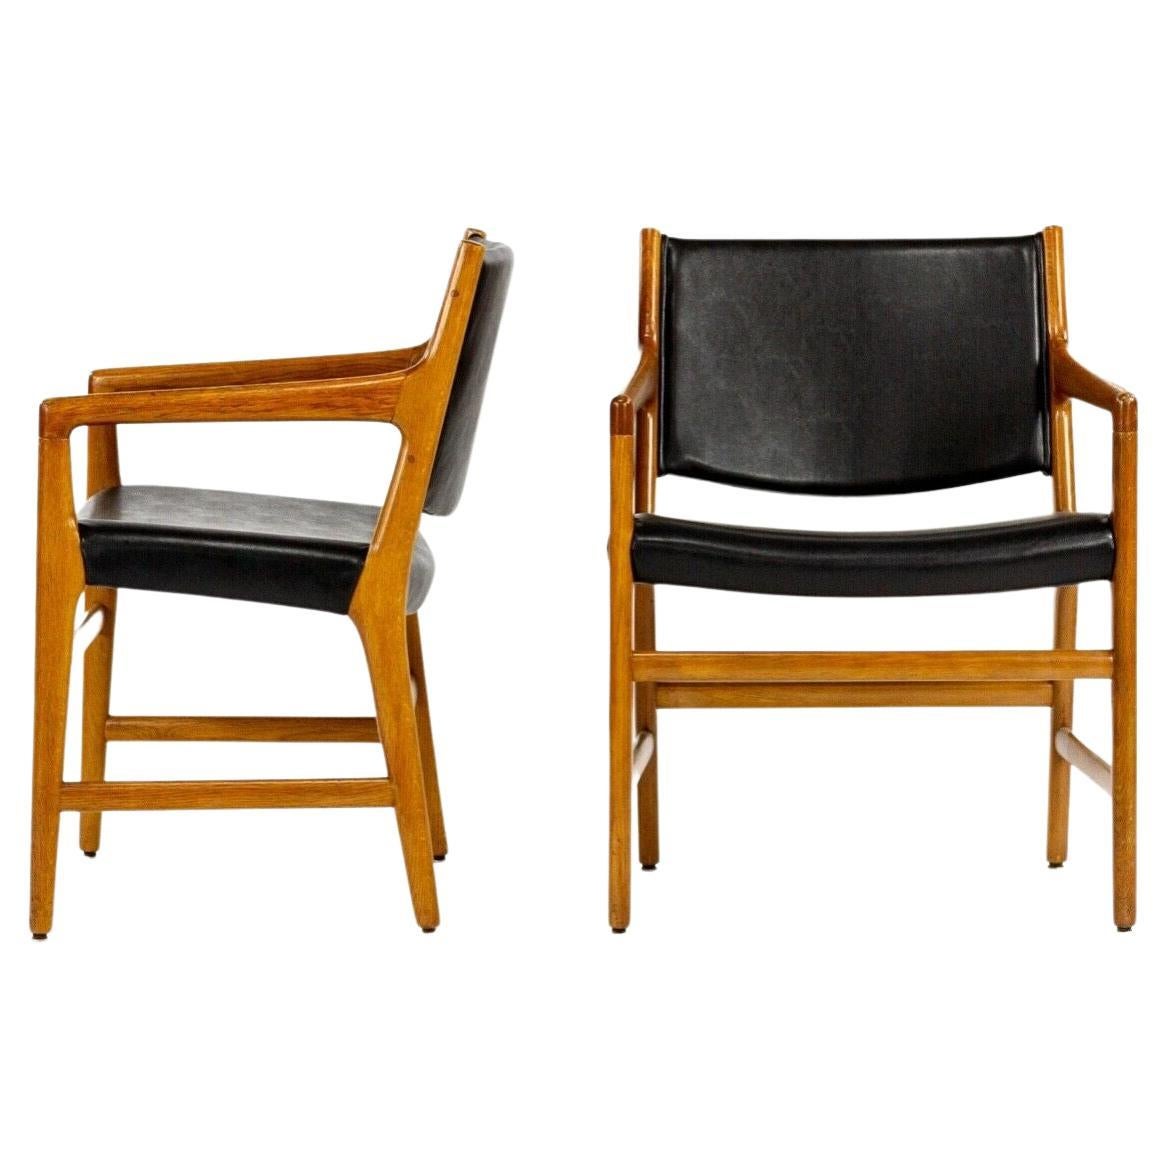 1965 Hans Wegner Johannes Hansen JH 507 Oak Dining Chairs from Harvard For Sale